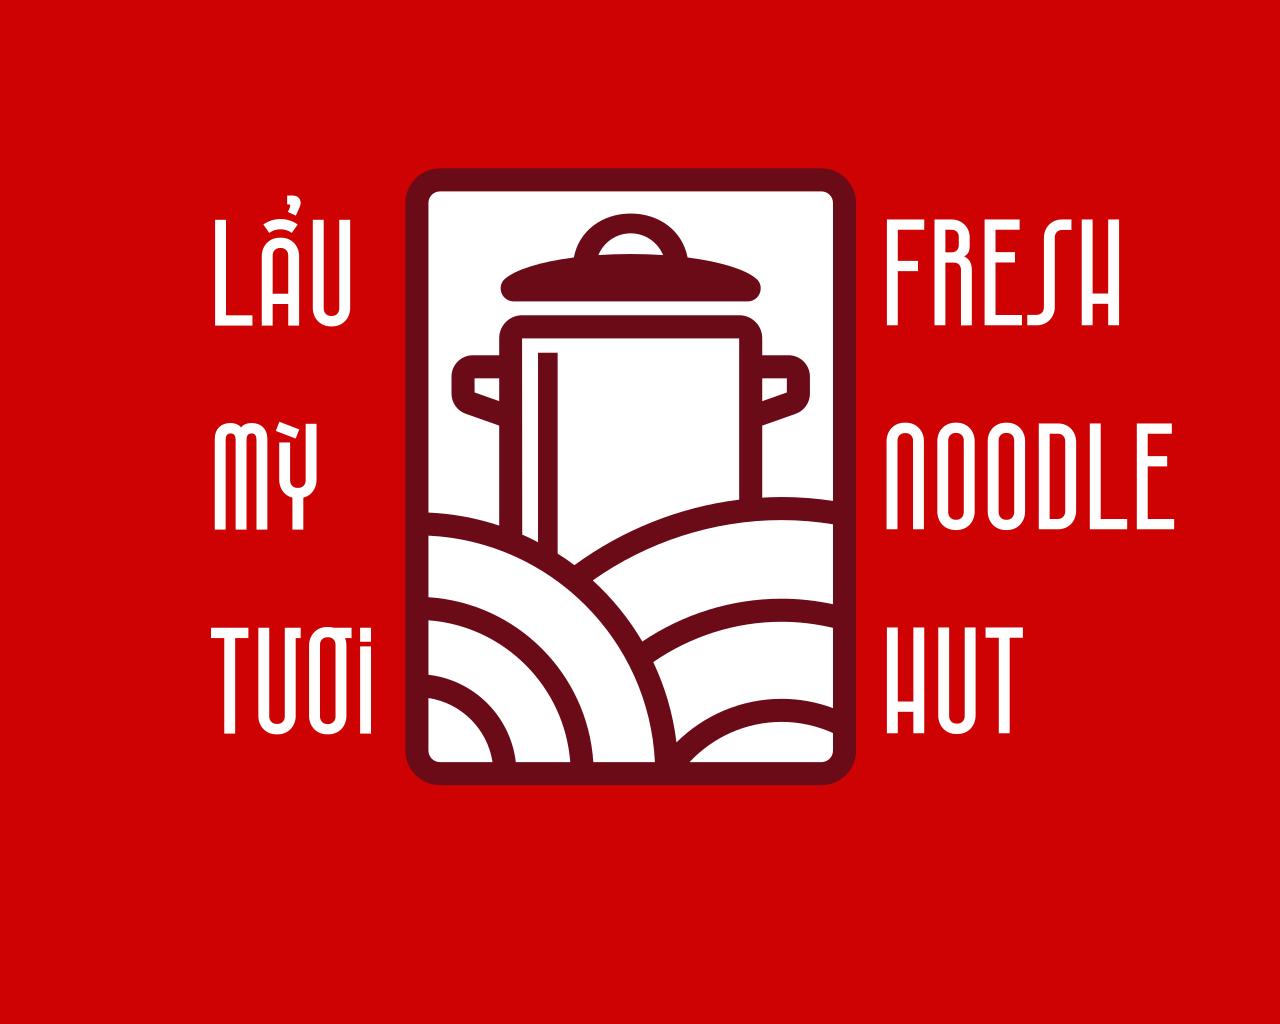 Fresh Noodle Hut